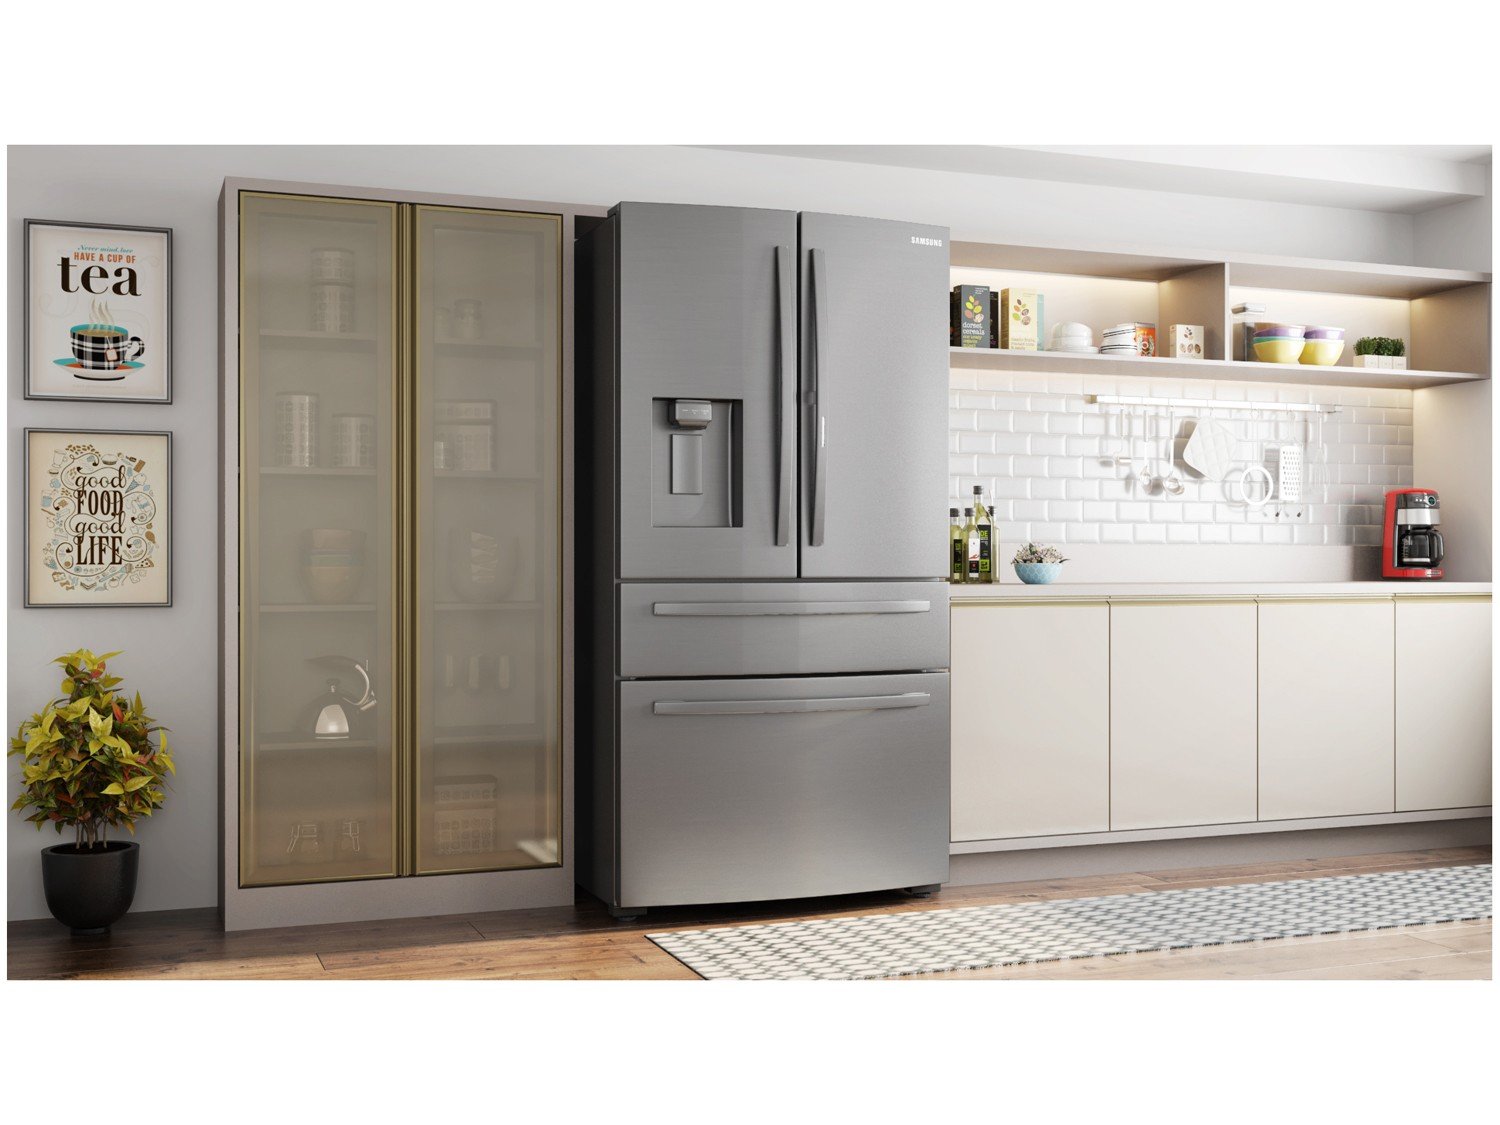 Refrigerador Samsung French Door RF22R7351SR com Food Showcase e Gaveta FlexZone Inox - 501L - 220v - 2